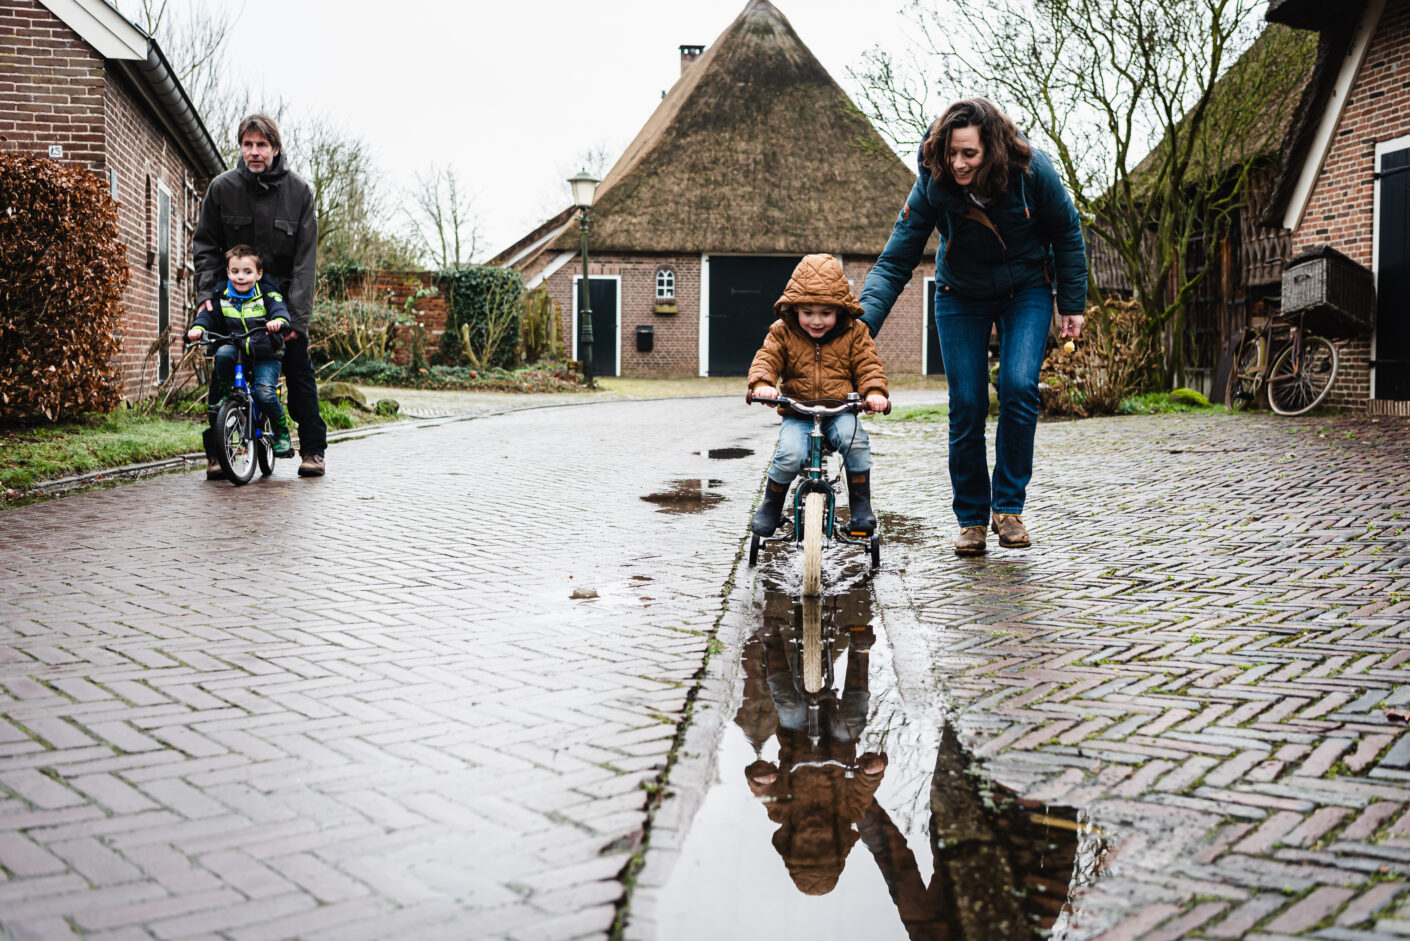 Jantina Fotografie Assen, Drenthe, Jantina Mulder, familiefotograaf Drenthe, Familie fotograaf Friesland, Familie fotograaf Groningen, fietsen door de plassen, leven in een dorp